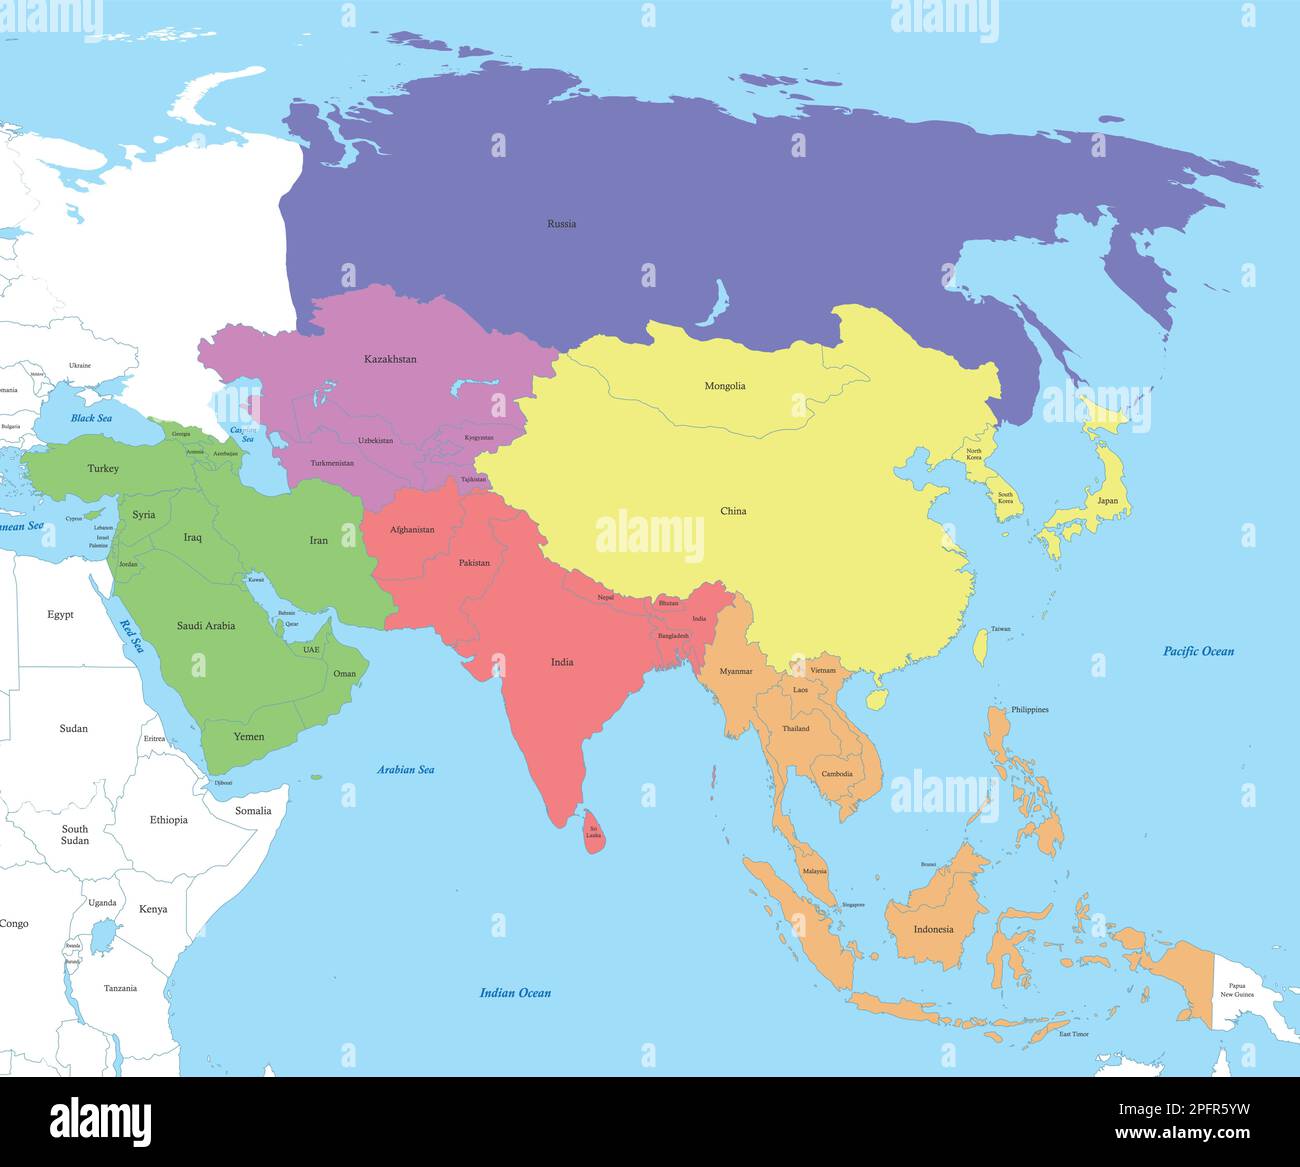 Mappa a colori politica dell'Asia con i confini degli stati. Illustrazione Vettoriale